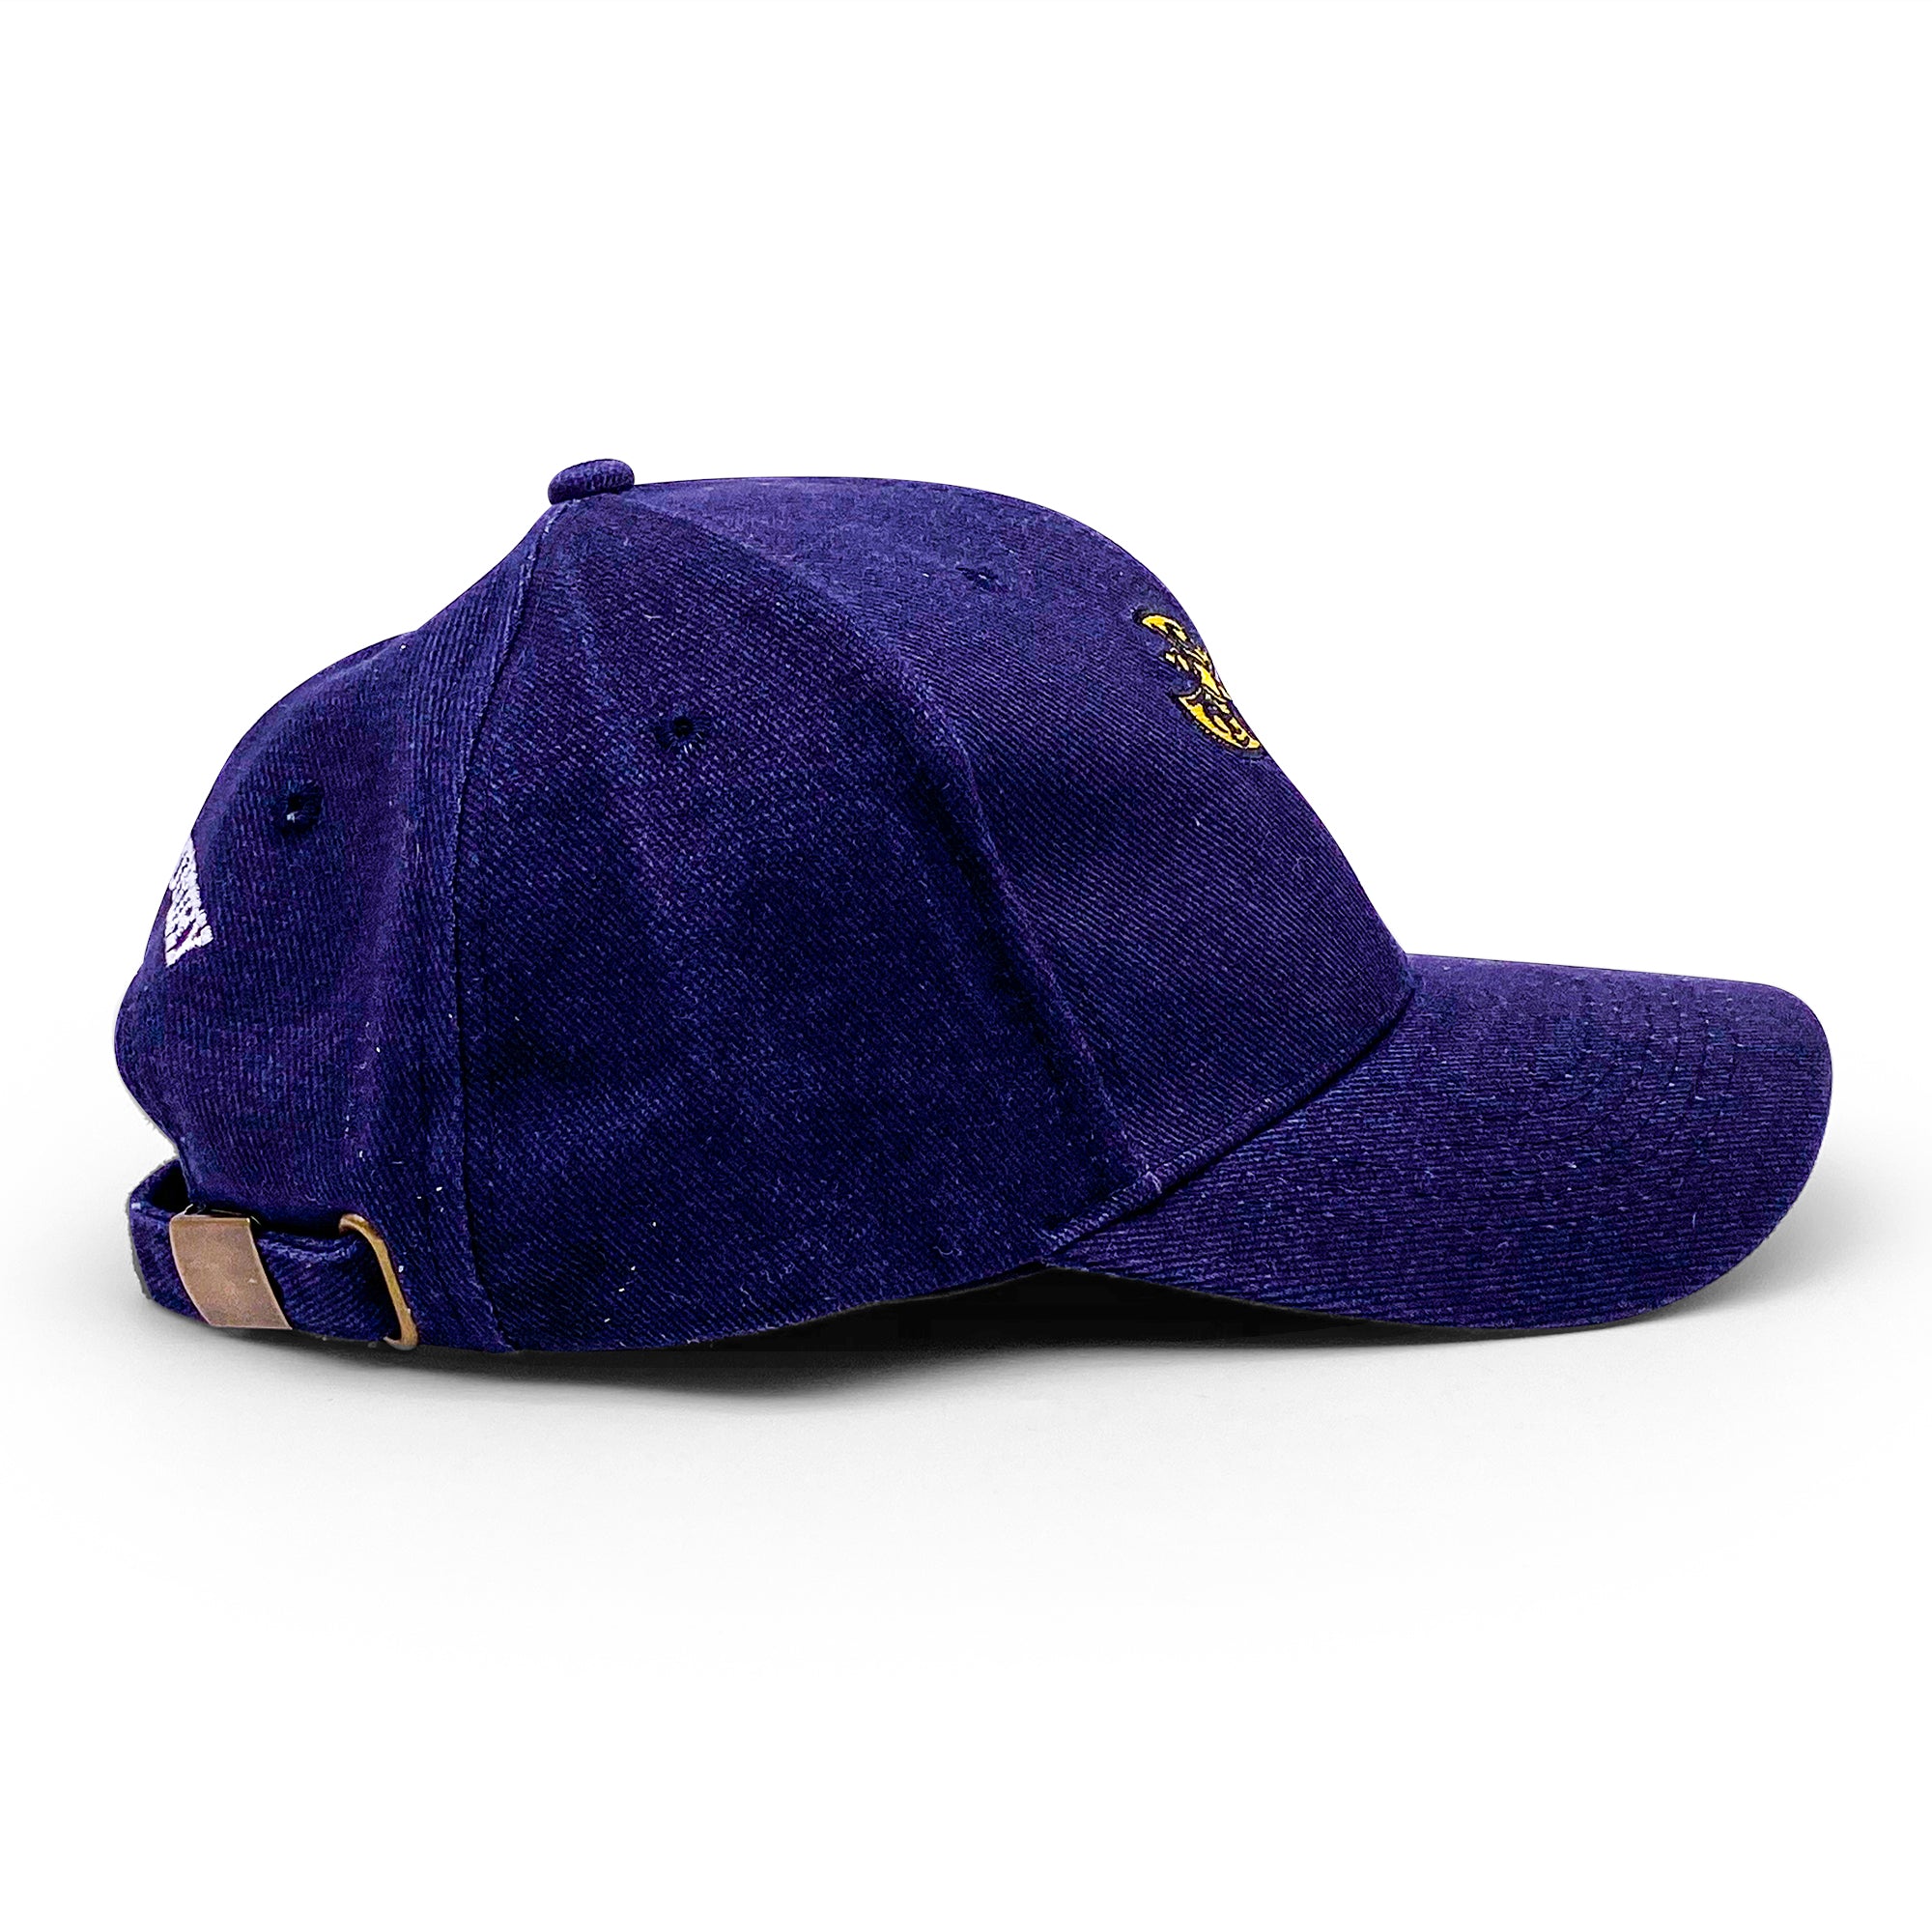 Adjustable Navy Blue Hat